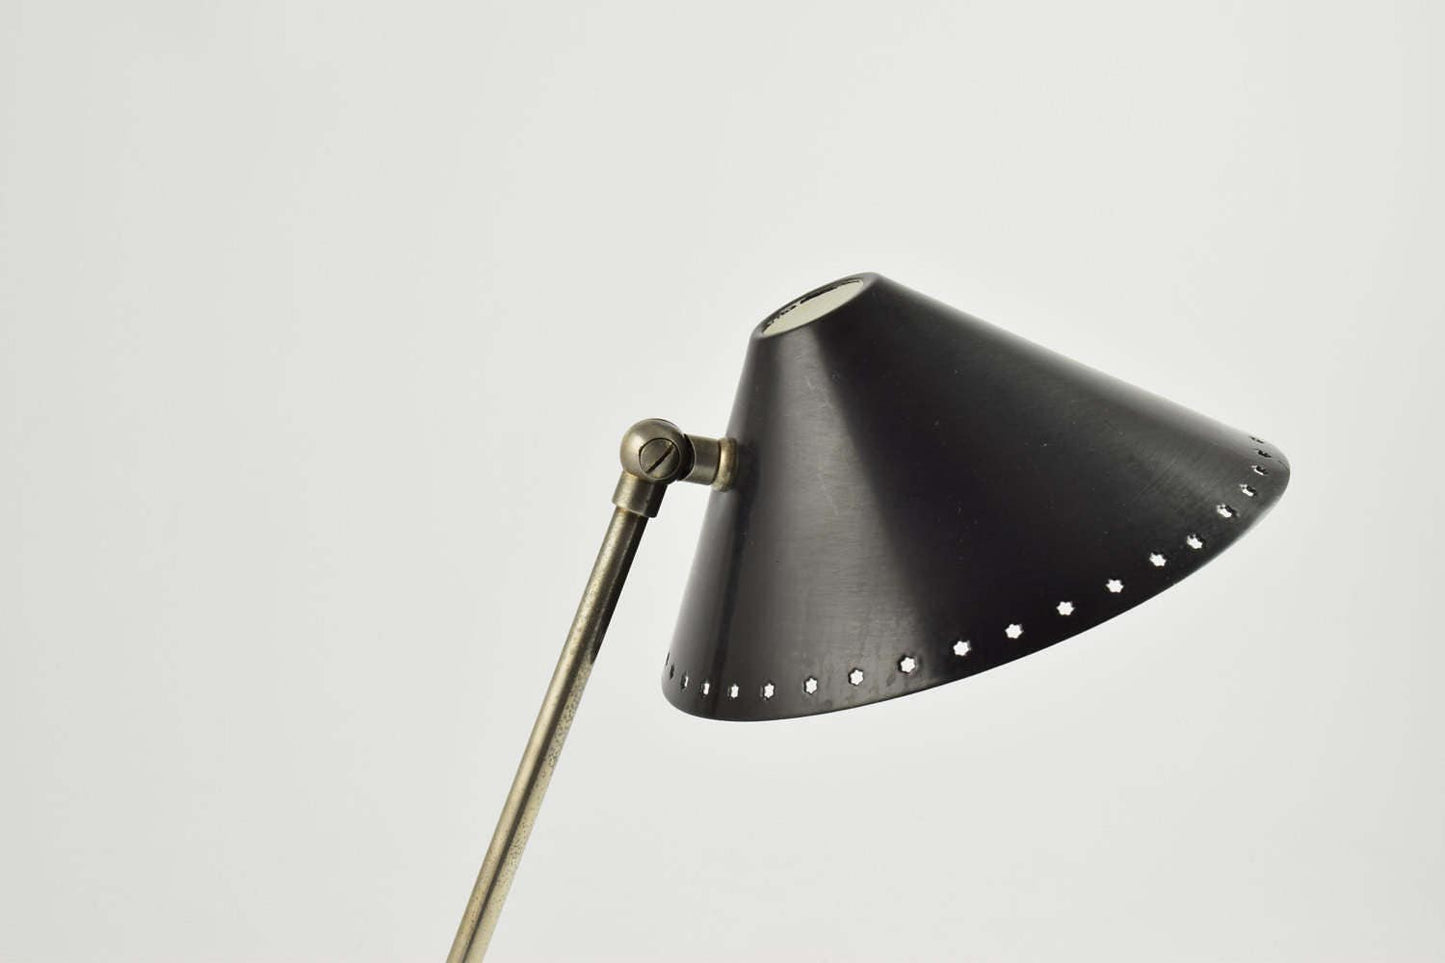 Lámpara Pinocho o lámpara pinokkio de H.Busquet de hala icono industrial minimalista de los años cincuenta